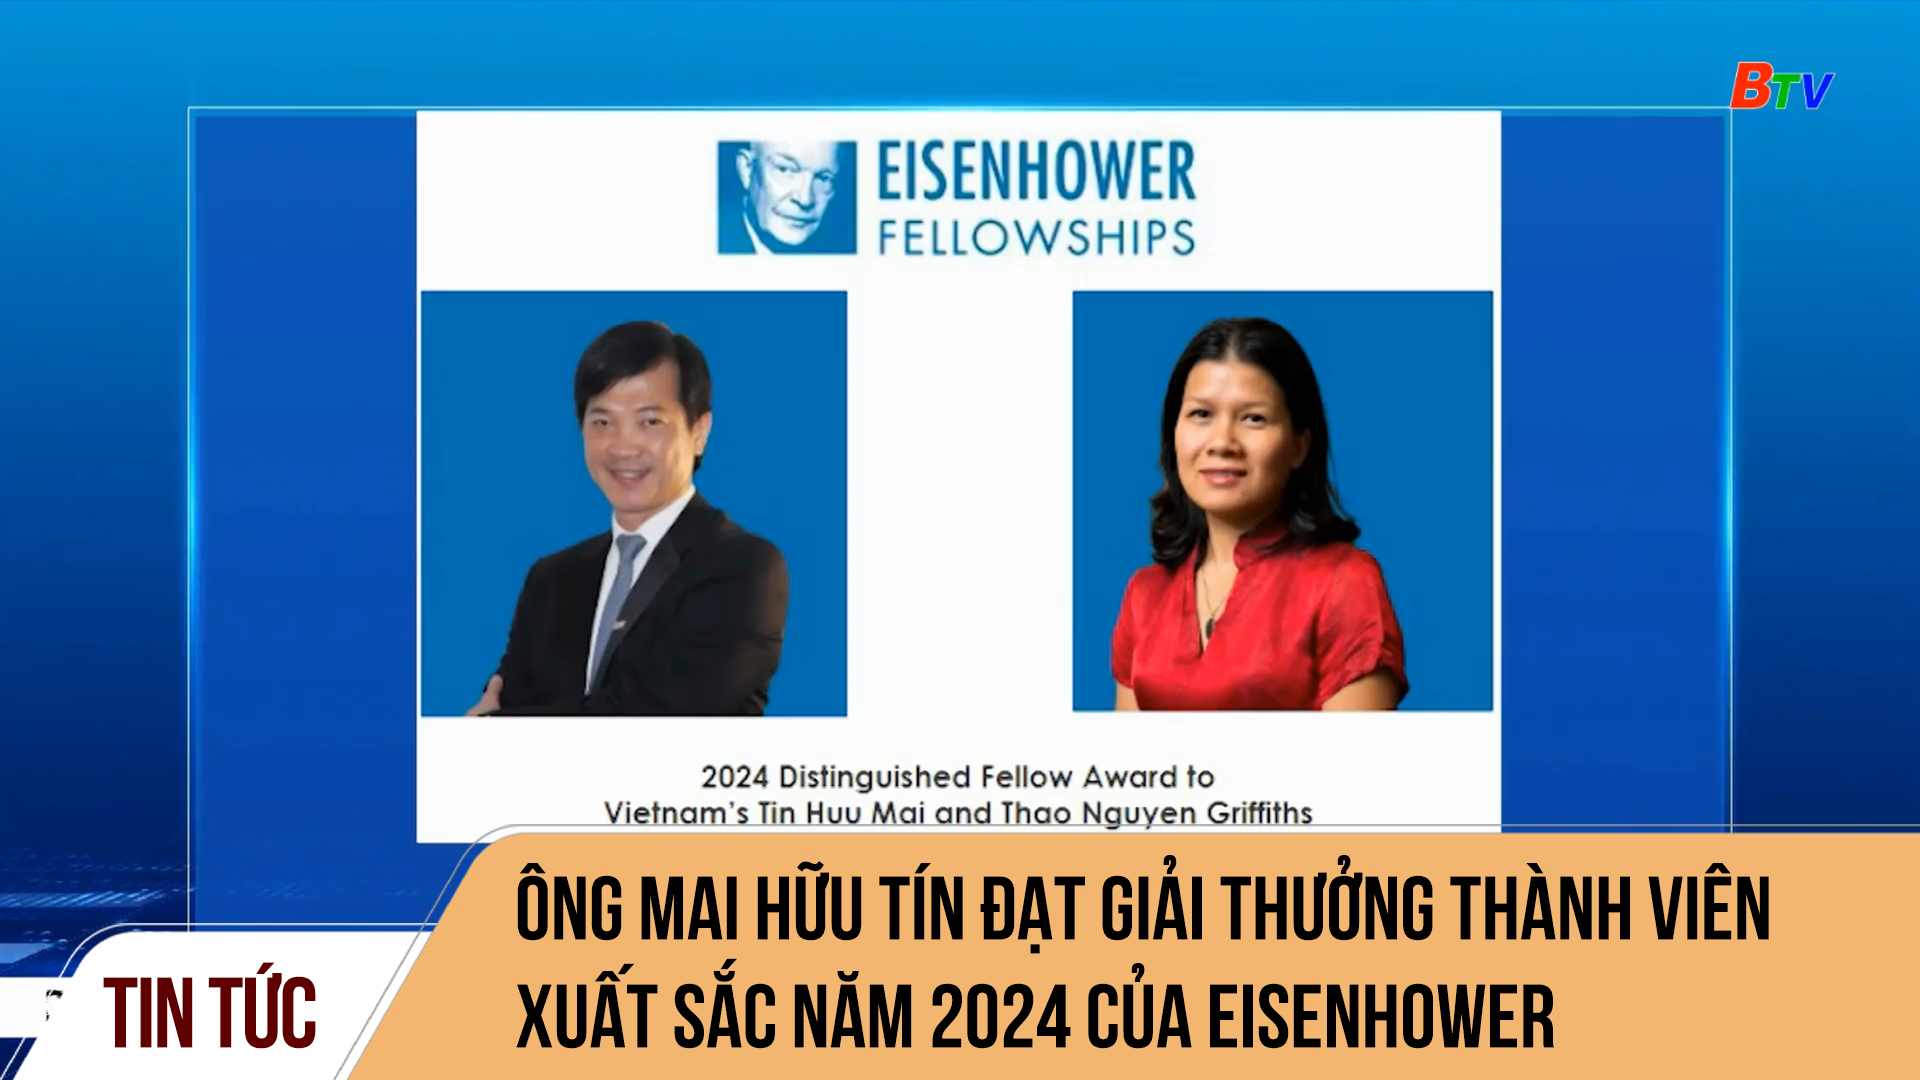 Ông Mai Hữu Tín đạt giải thưởng Thành viên xuất sắc năm 2024 của Eisenhower Fellowships (Hoa Kỳ)